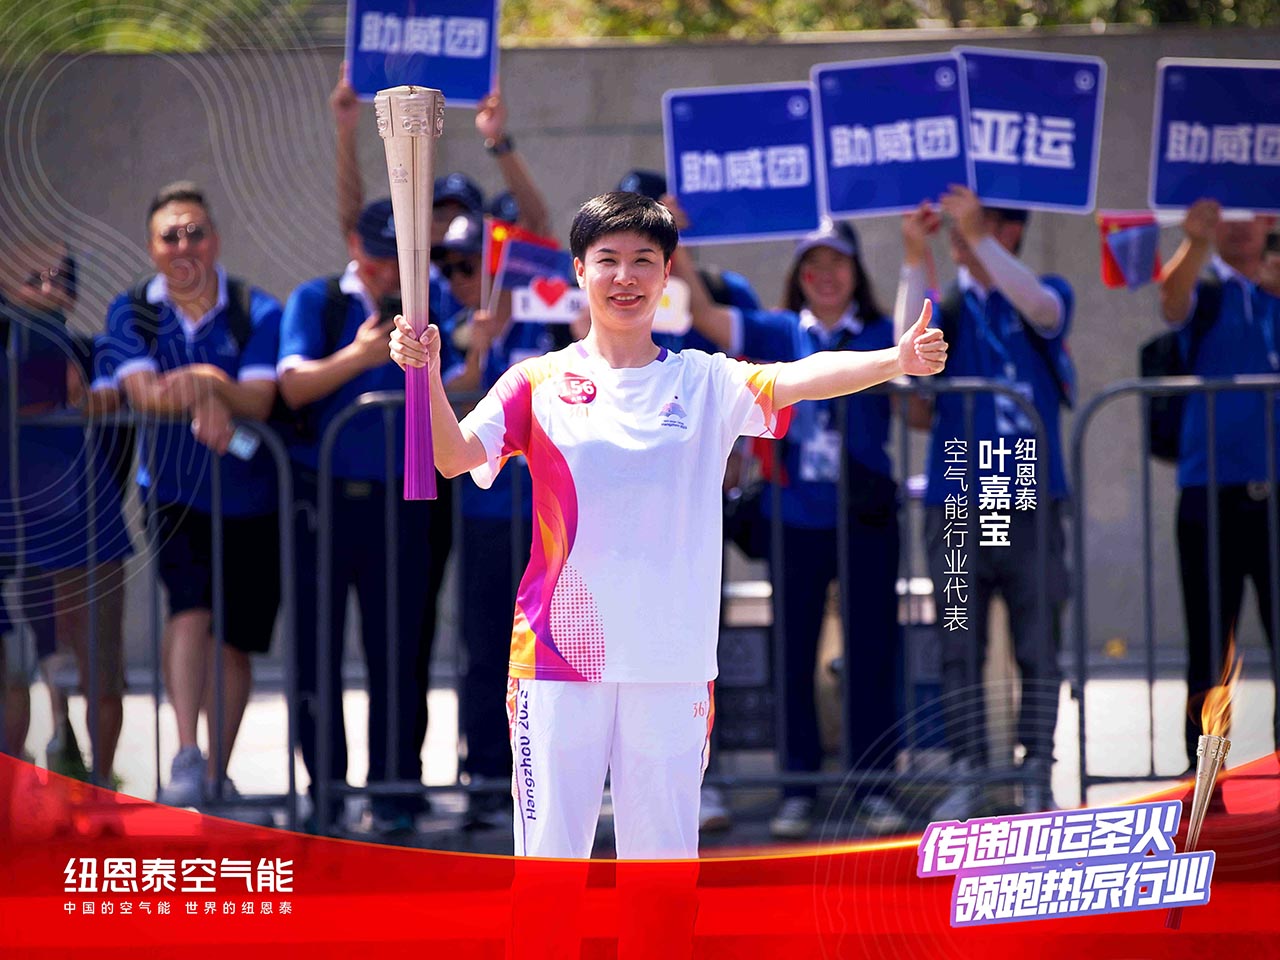 杭州亚运会官方供应商纽恩泰叶嘉宝空气能行业代表领跑第156棒 助力亚运 节能高效